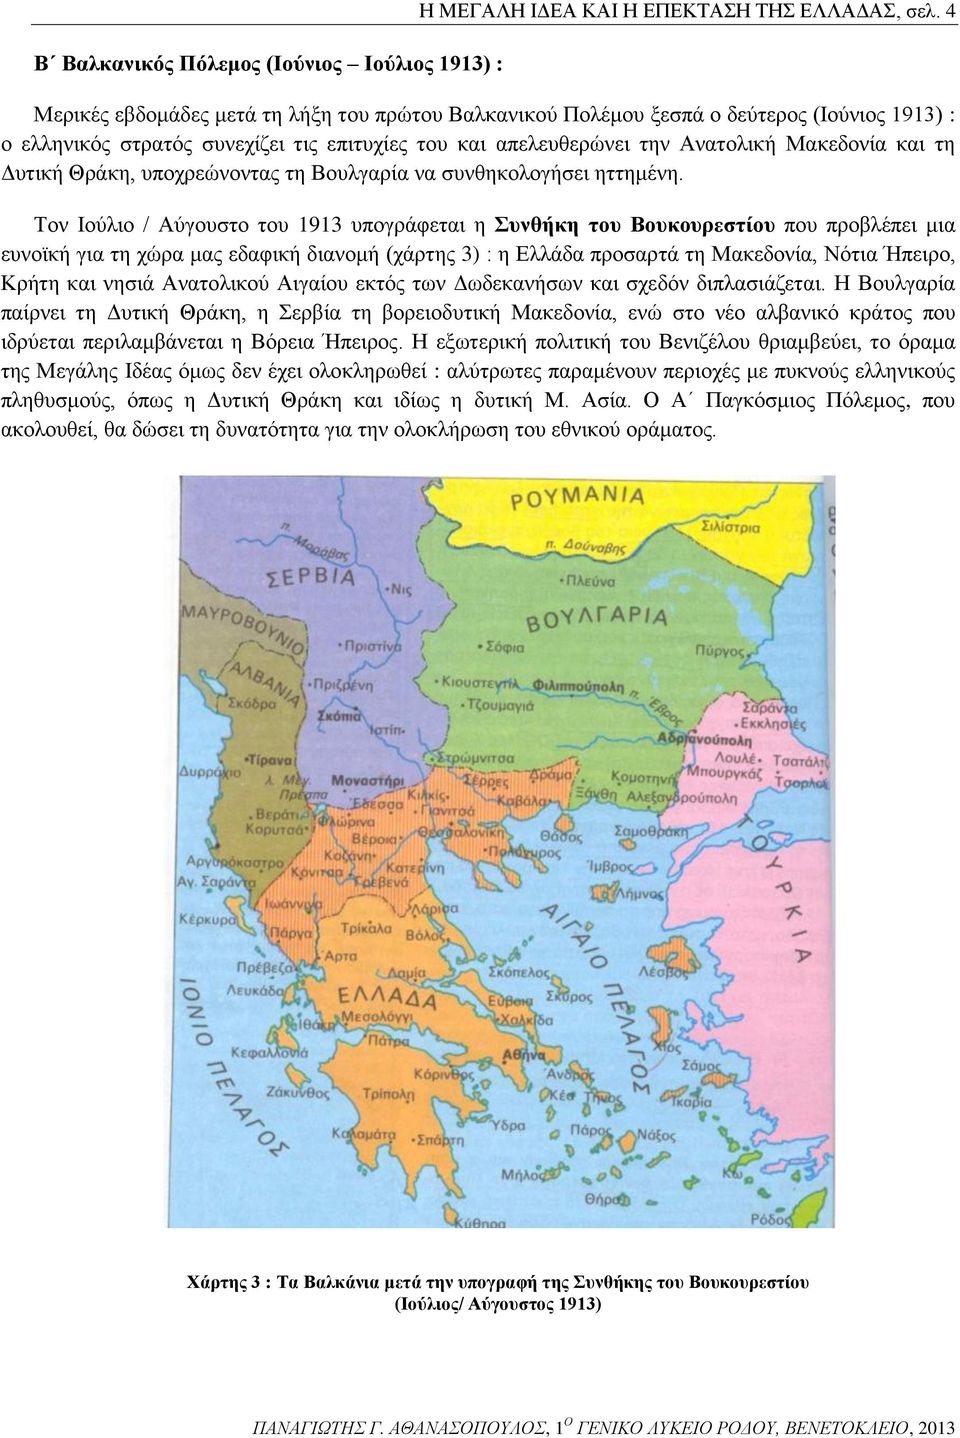 Δυτική Θράκη, υποχρεώνοντας τη Βουλγαρία να συνθηκολογήσει ηττημένη.